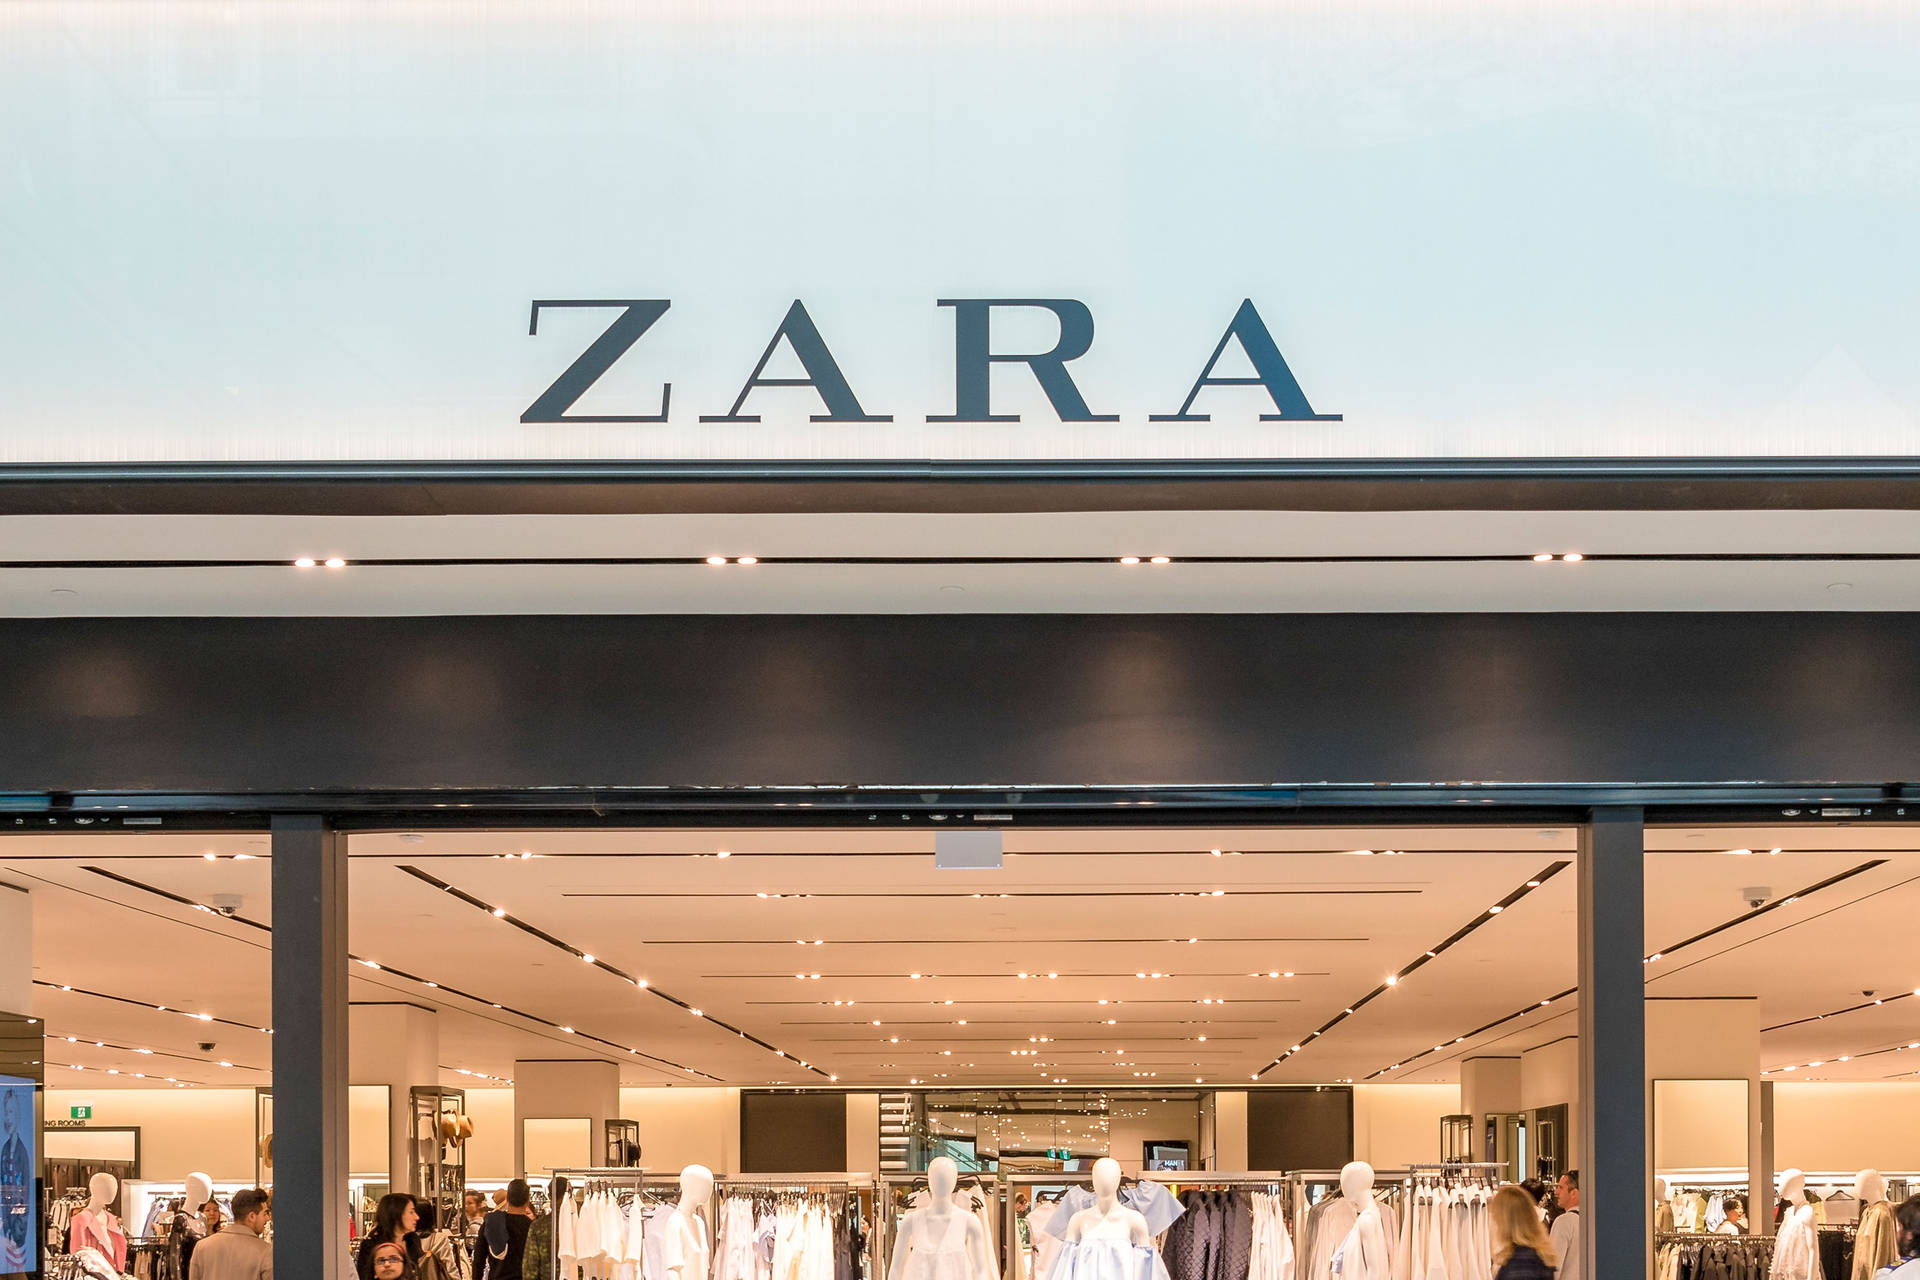 Zara Store Entrance Signage